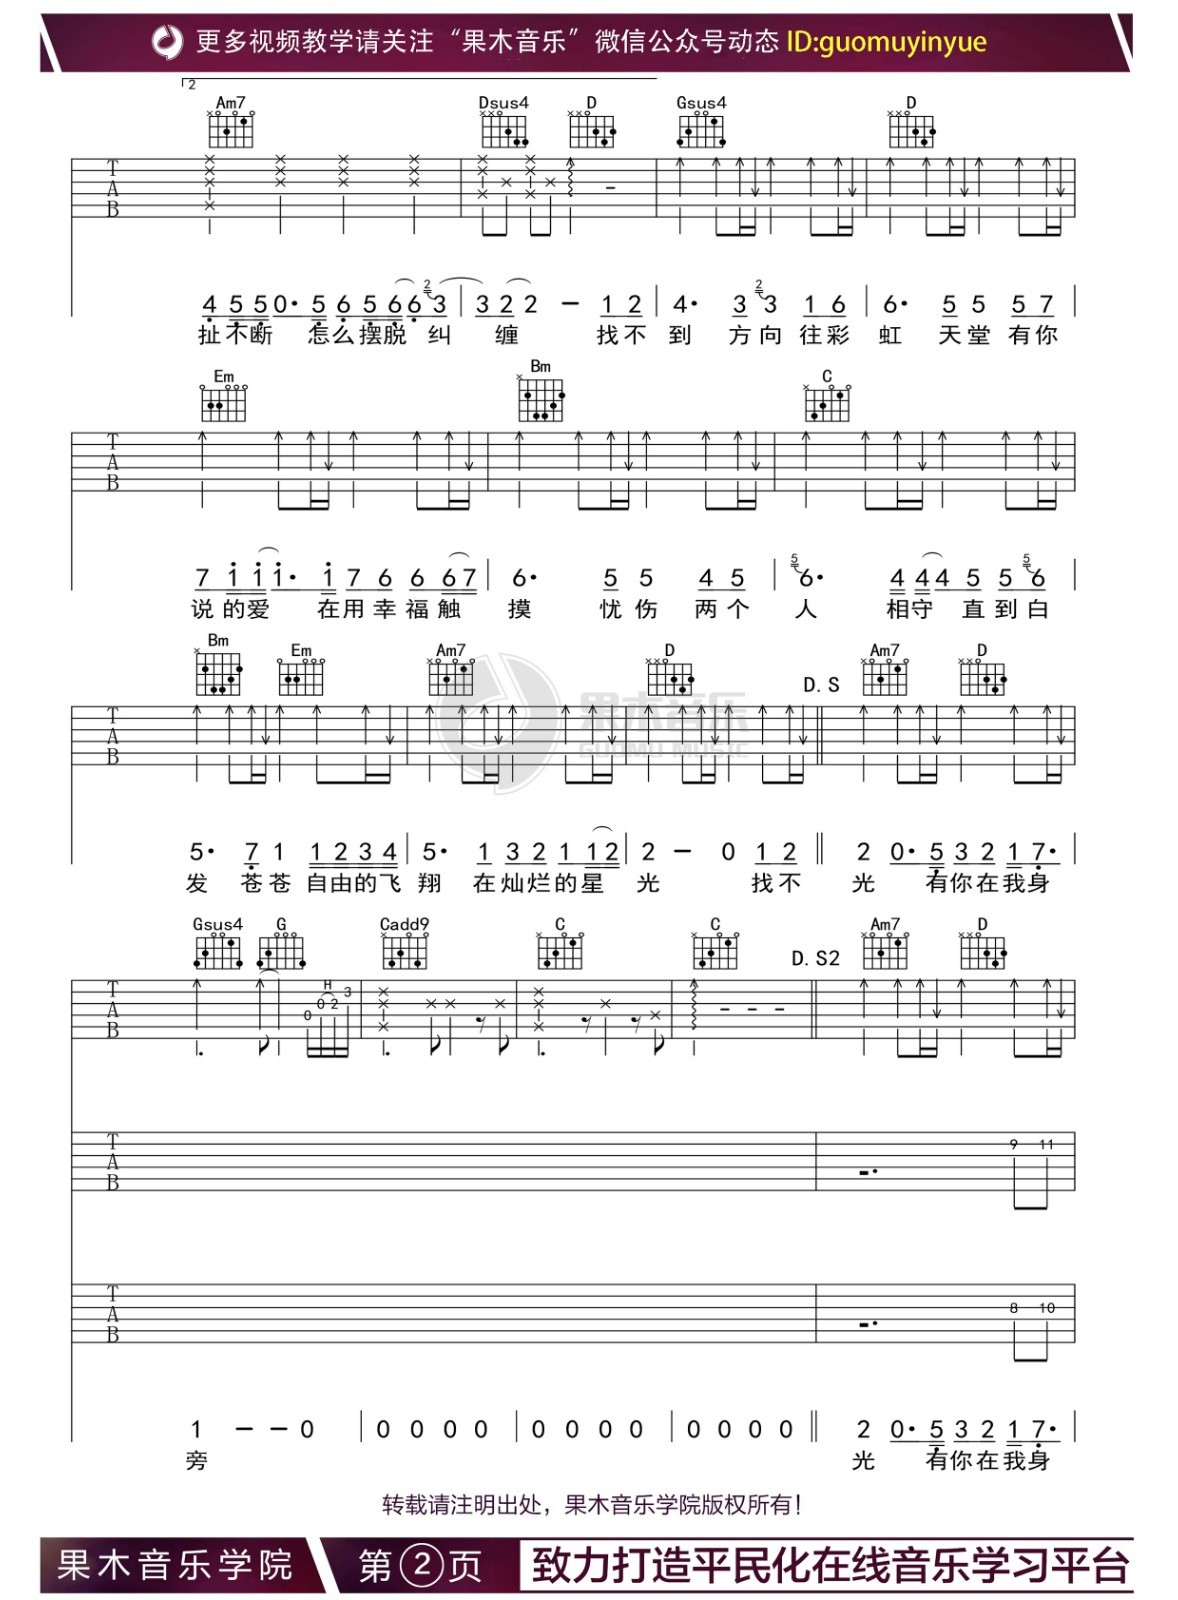 彩虹天堂-劉耕宏-EOP教學曲-鋼琴譜檔(五線譜、雙手簡譜、數位譜、Midi、PDF)免費下載